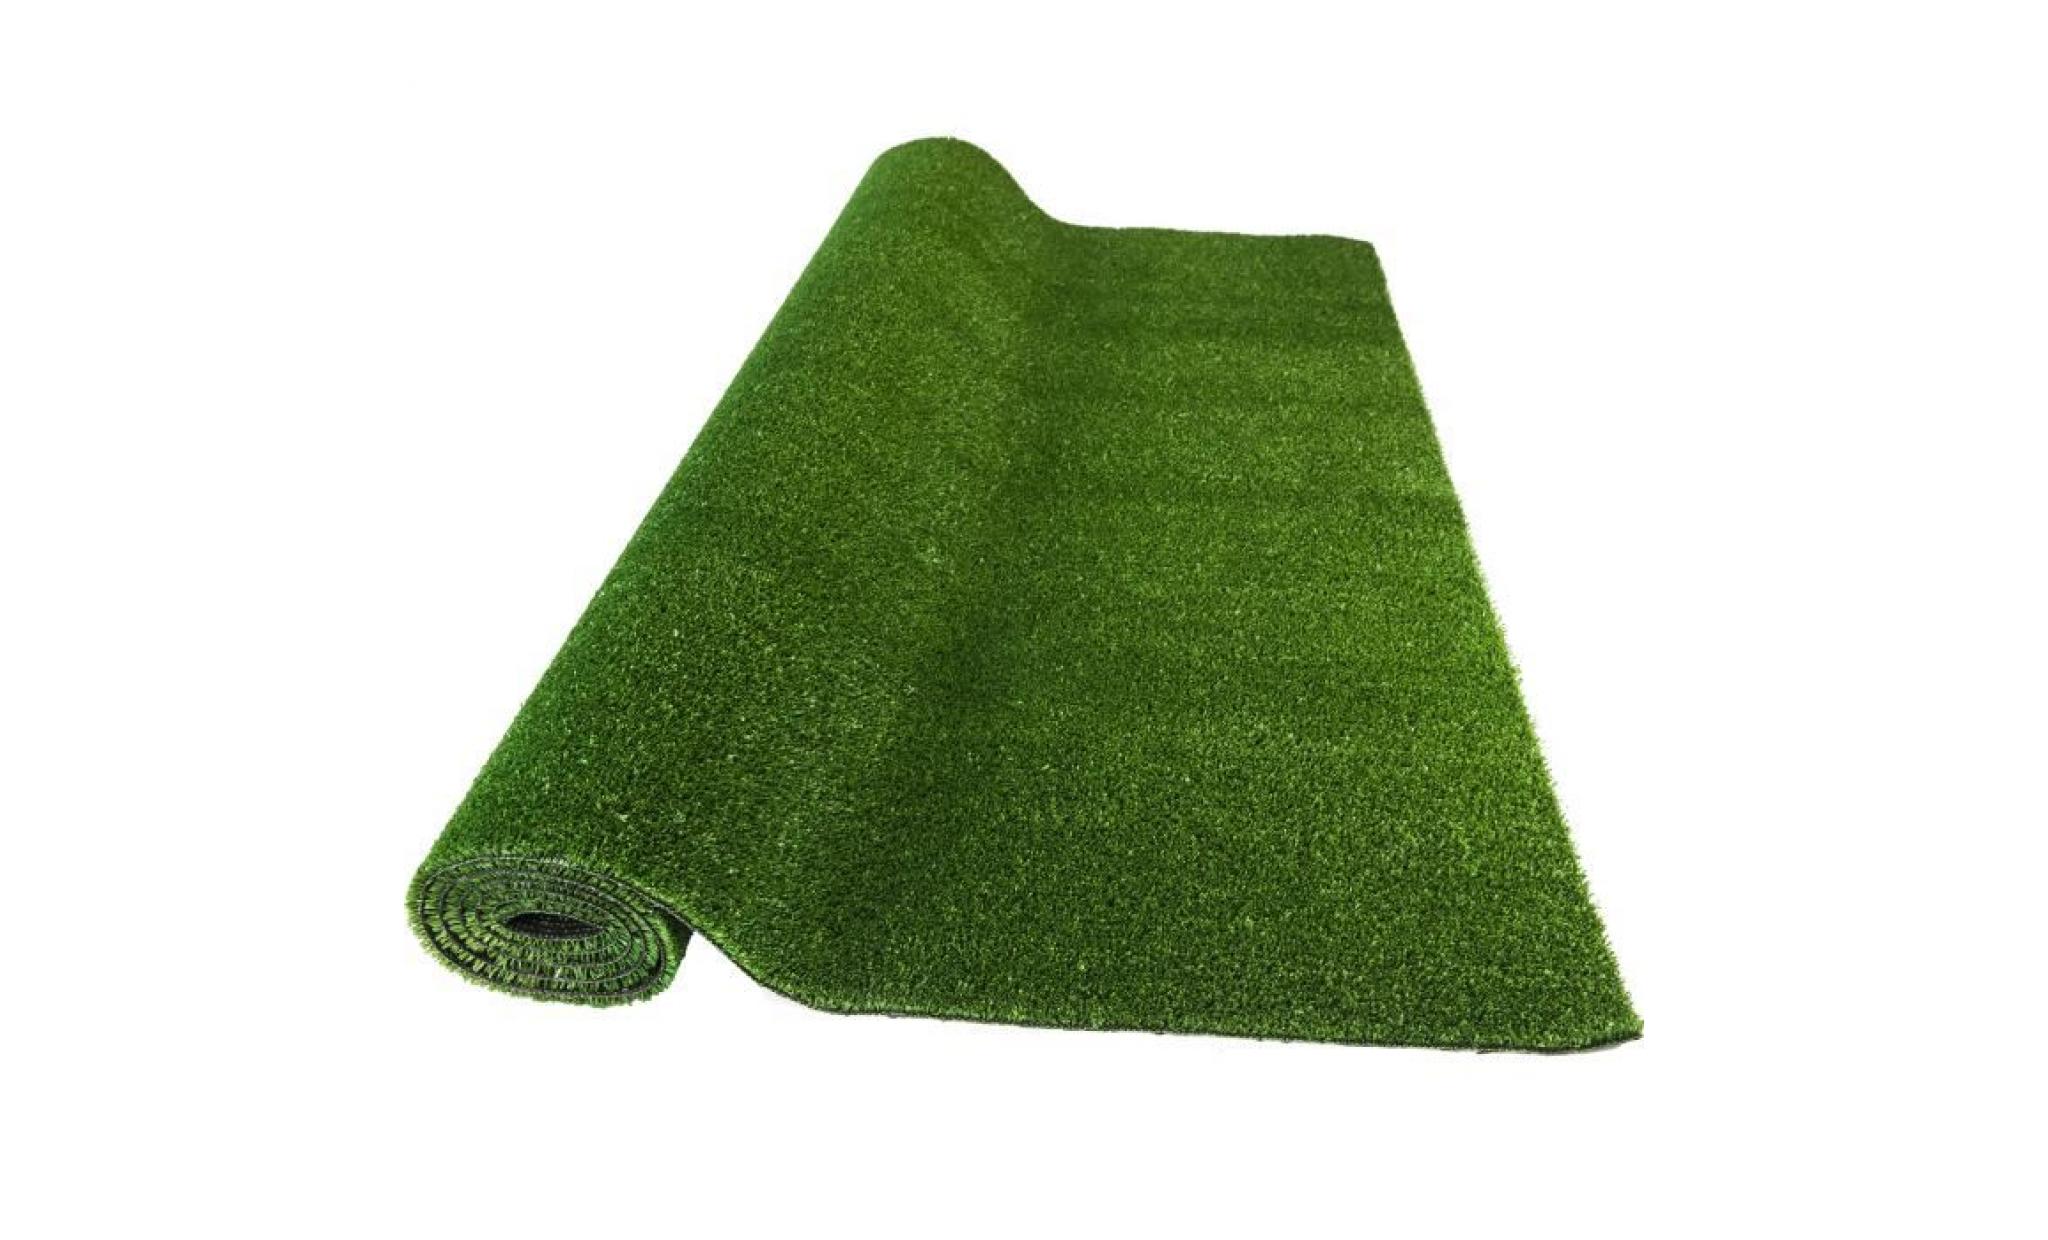 50 x 120 cm tapis de gazon synthetique. coloris vert disponible en plusieurs dimensions.